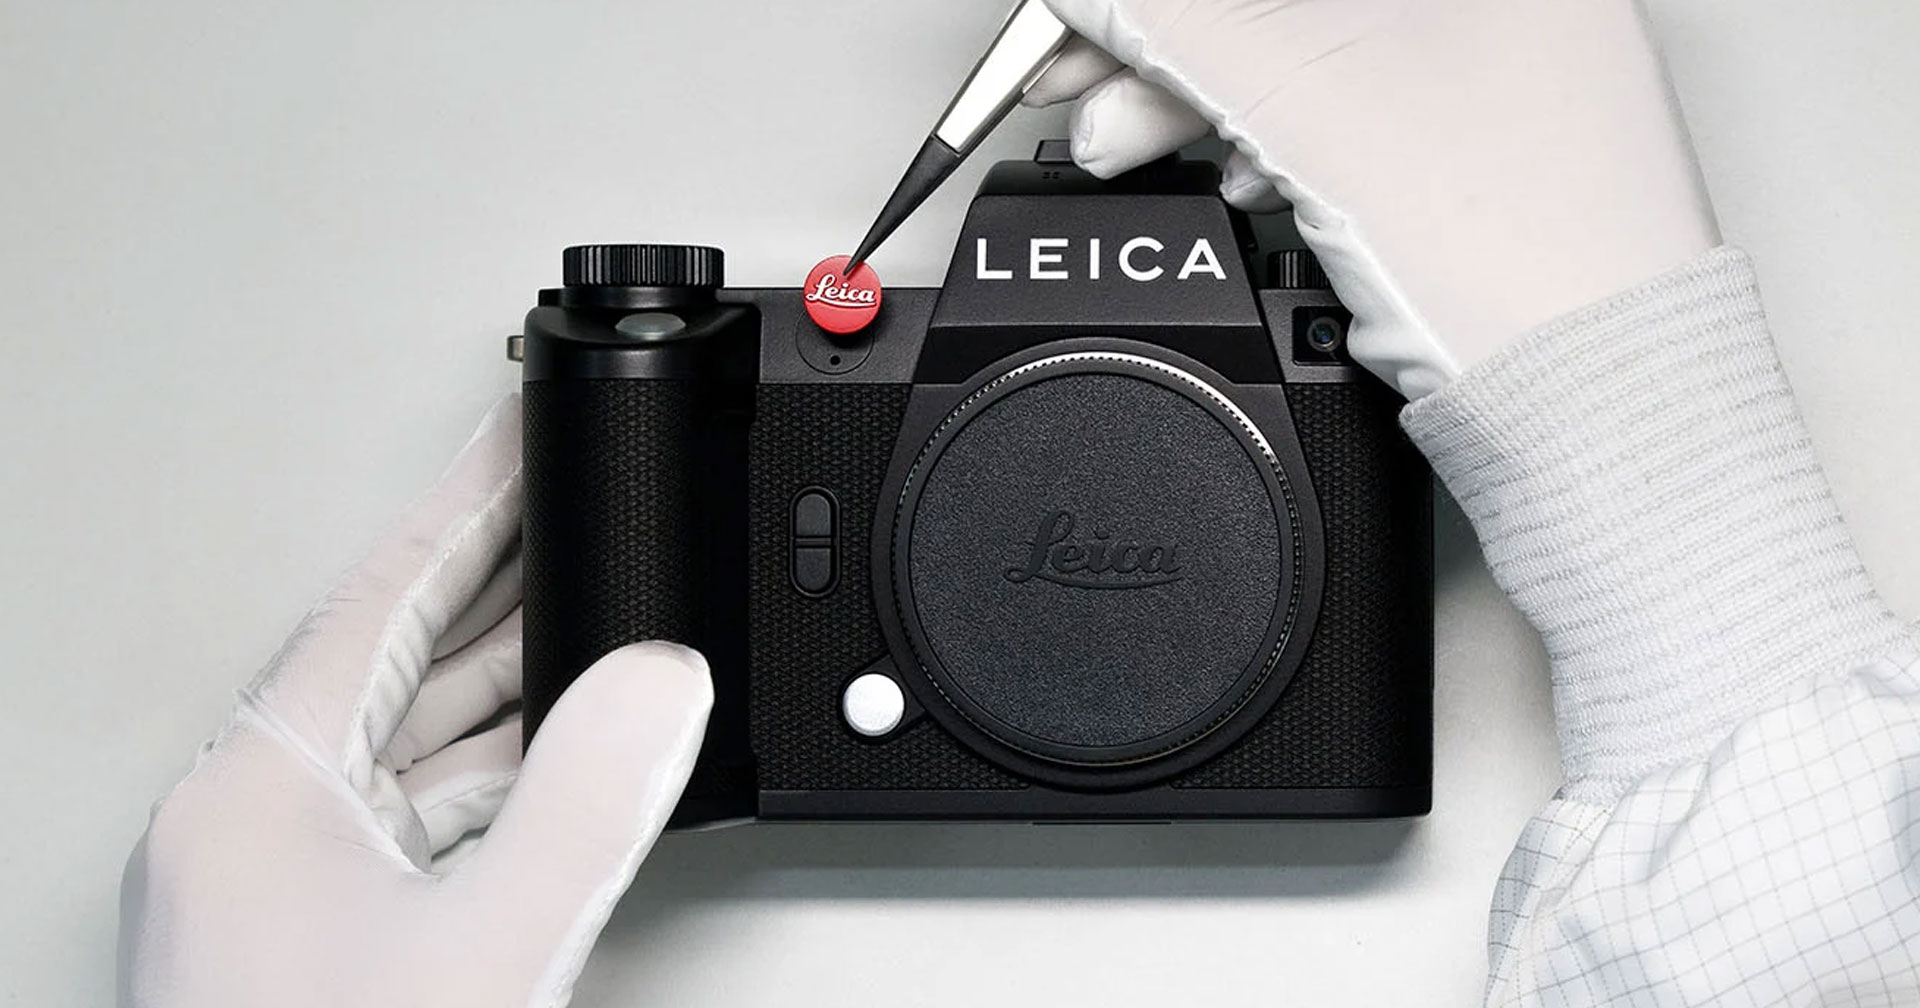 เปิดตัว Leica SL3 เซนเซอร์ใหม่ 60MP โฟกัสไวกว่าที่เคยด้วย PDAF ในราคา 265,900 บาท